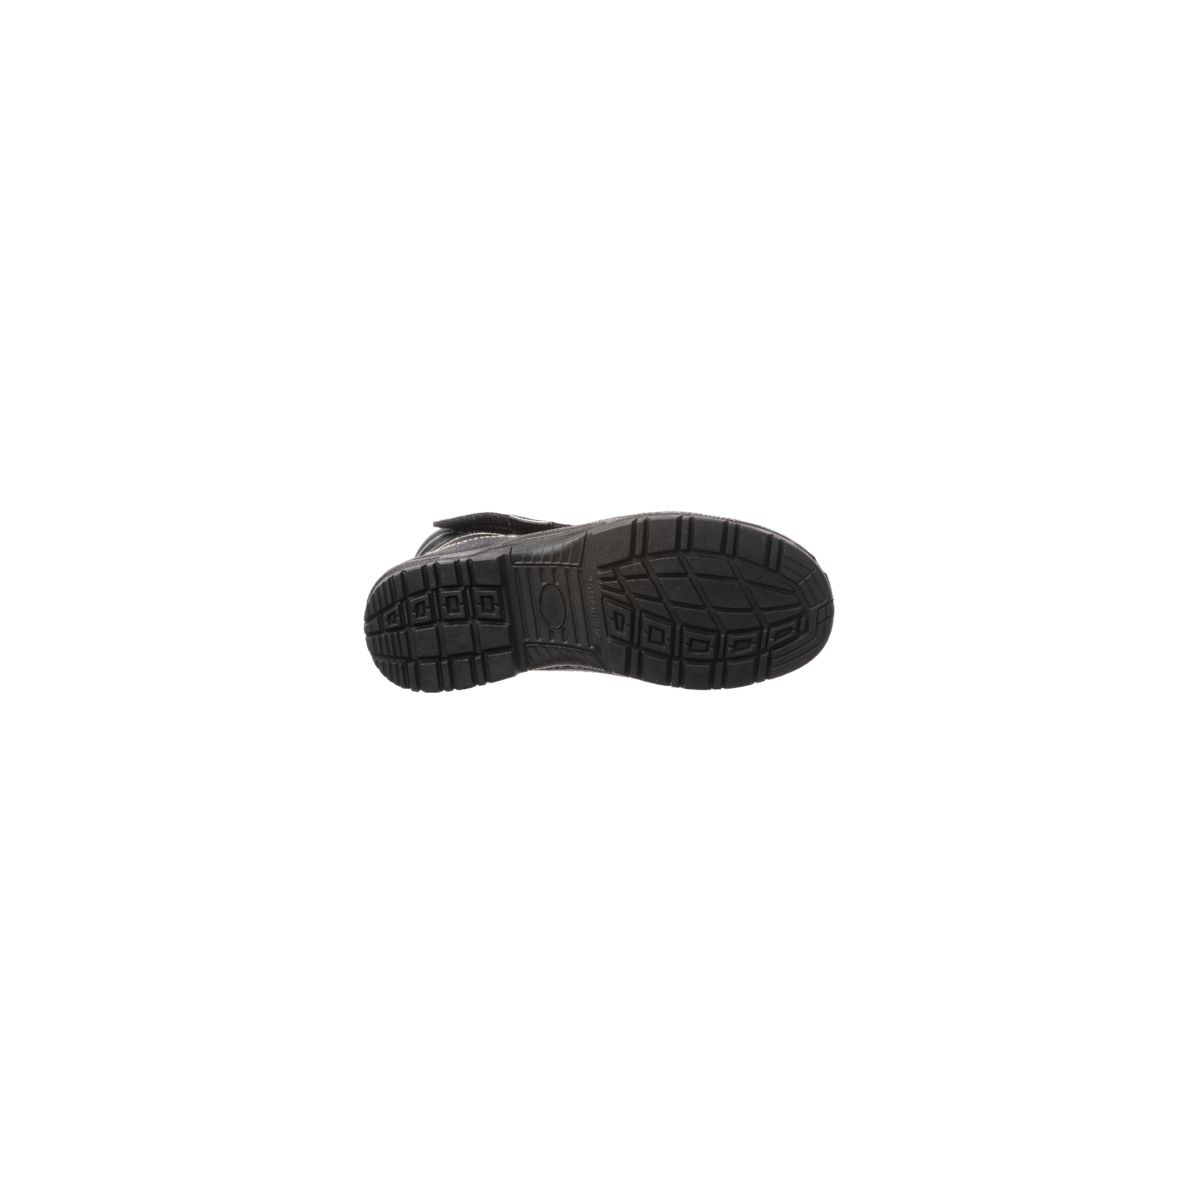 Chaussure de sécurité QUADRUFITE S3 soudeur composite noire - COVERGUARD - Taille 41 1